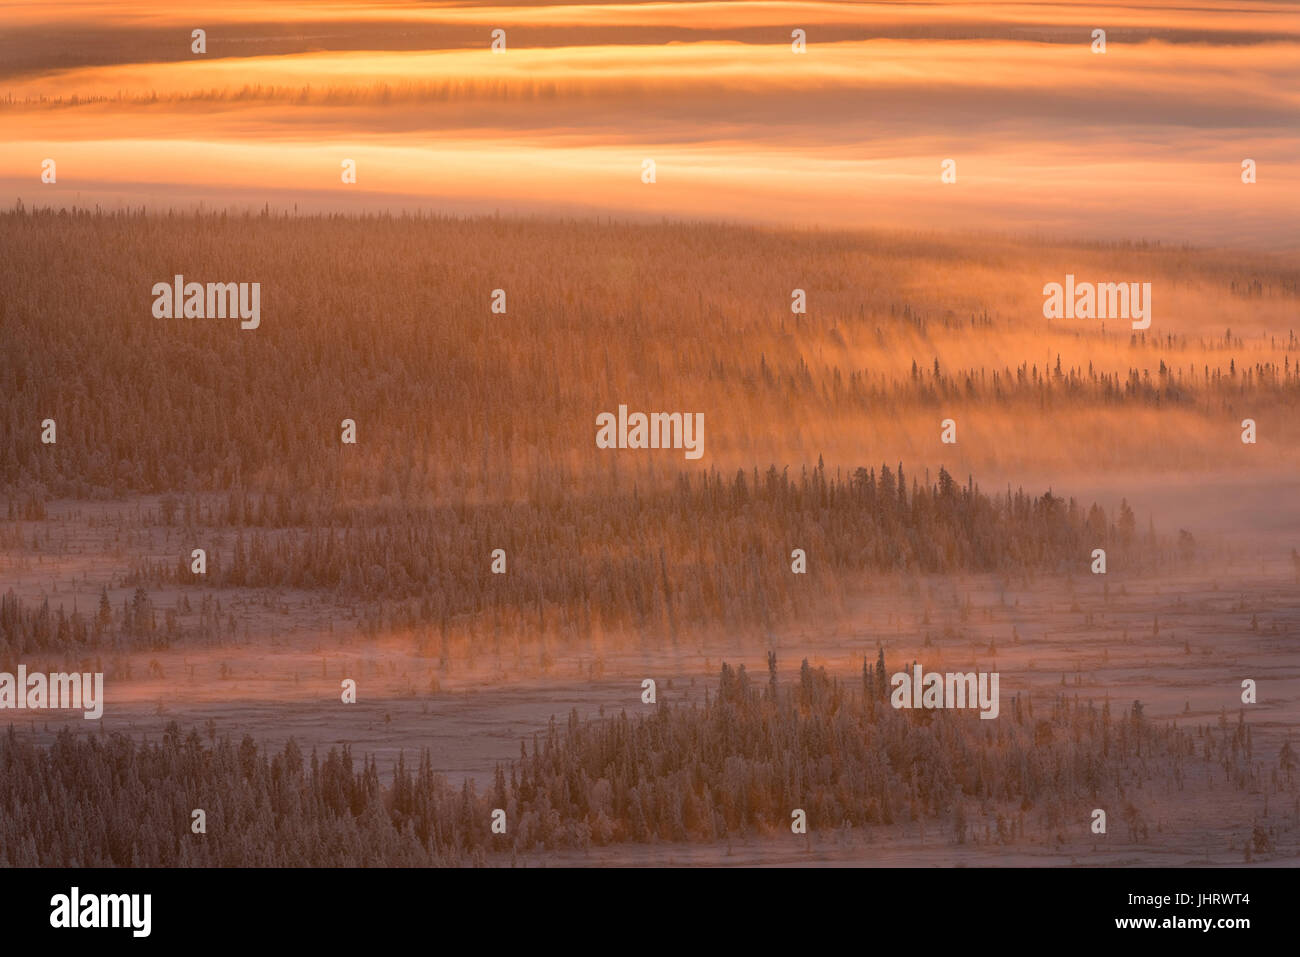 Scenery in the back light, Swedish Lapland, Scandinavia, Landschaft im Gegenlicht, Schwedisch-Lappland, Skandinavien Stock Photo